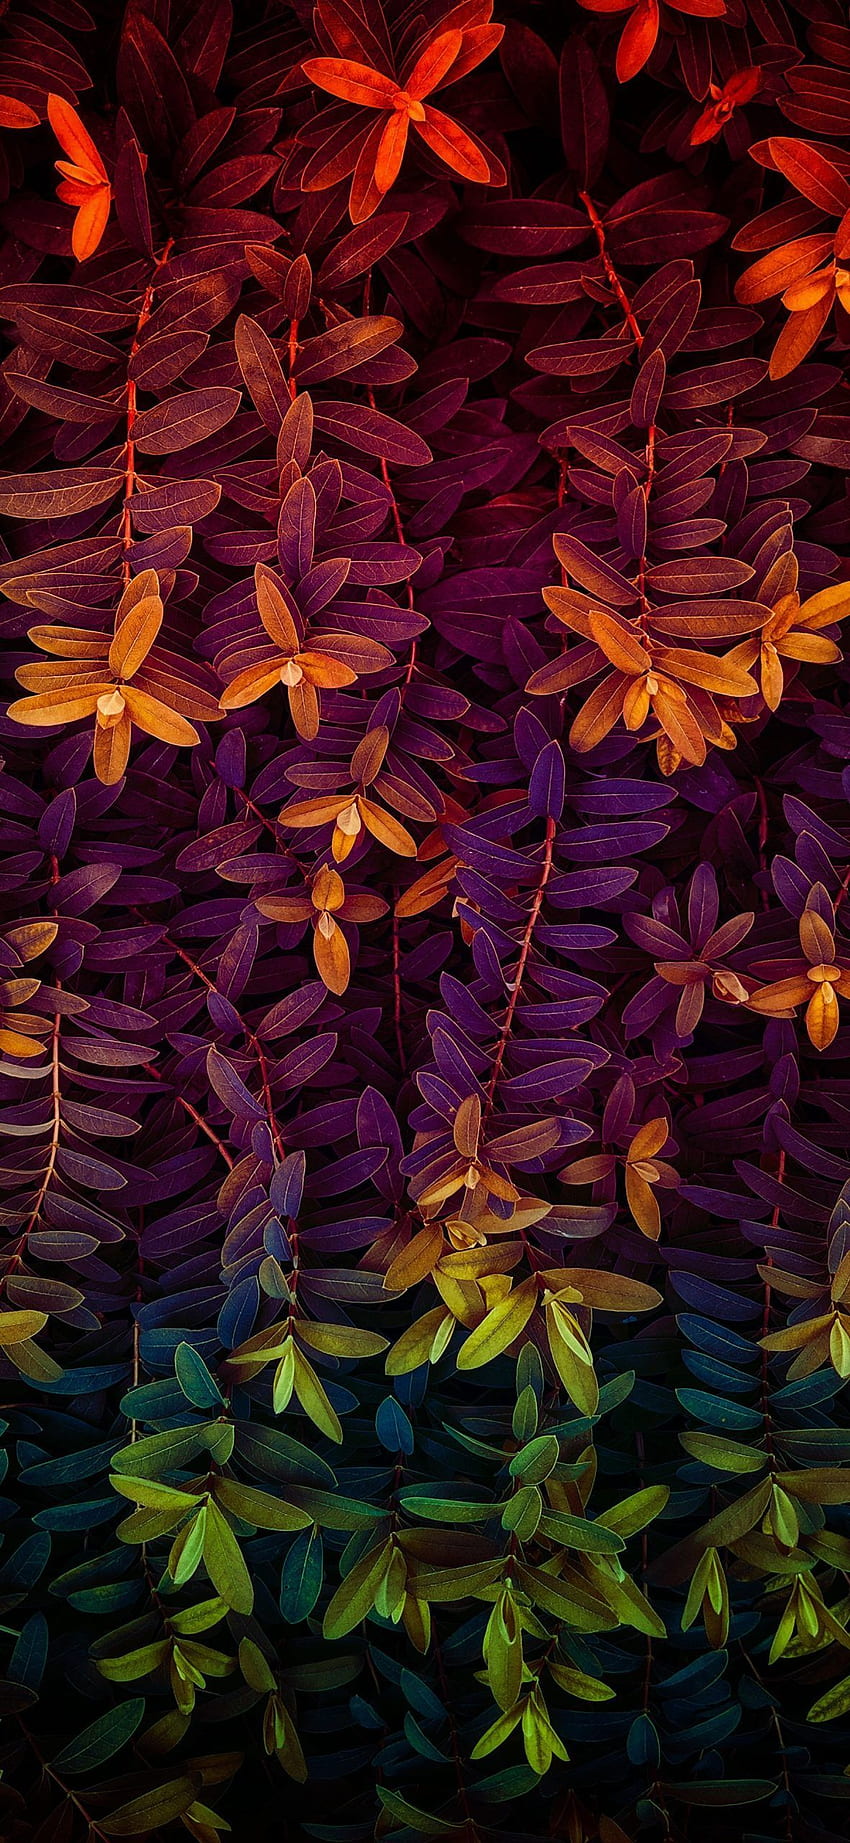 Hoja, Púrpura, Violeta, Amarillo, Planta, Patrón. iPhone floral, naturaleza, hermoso para teléfono fondo de pantalla del teléfono